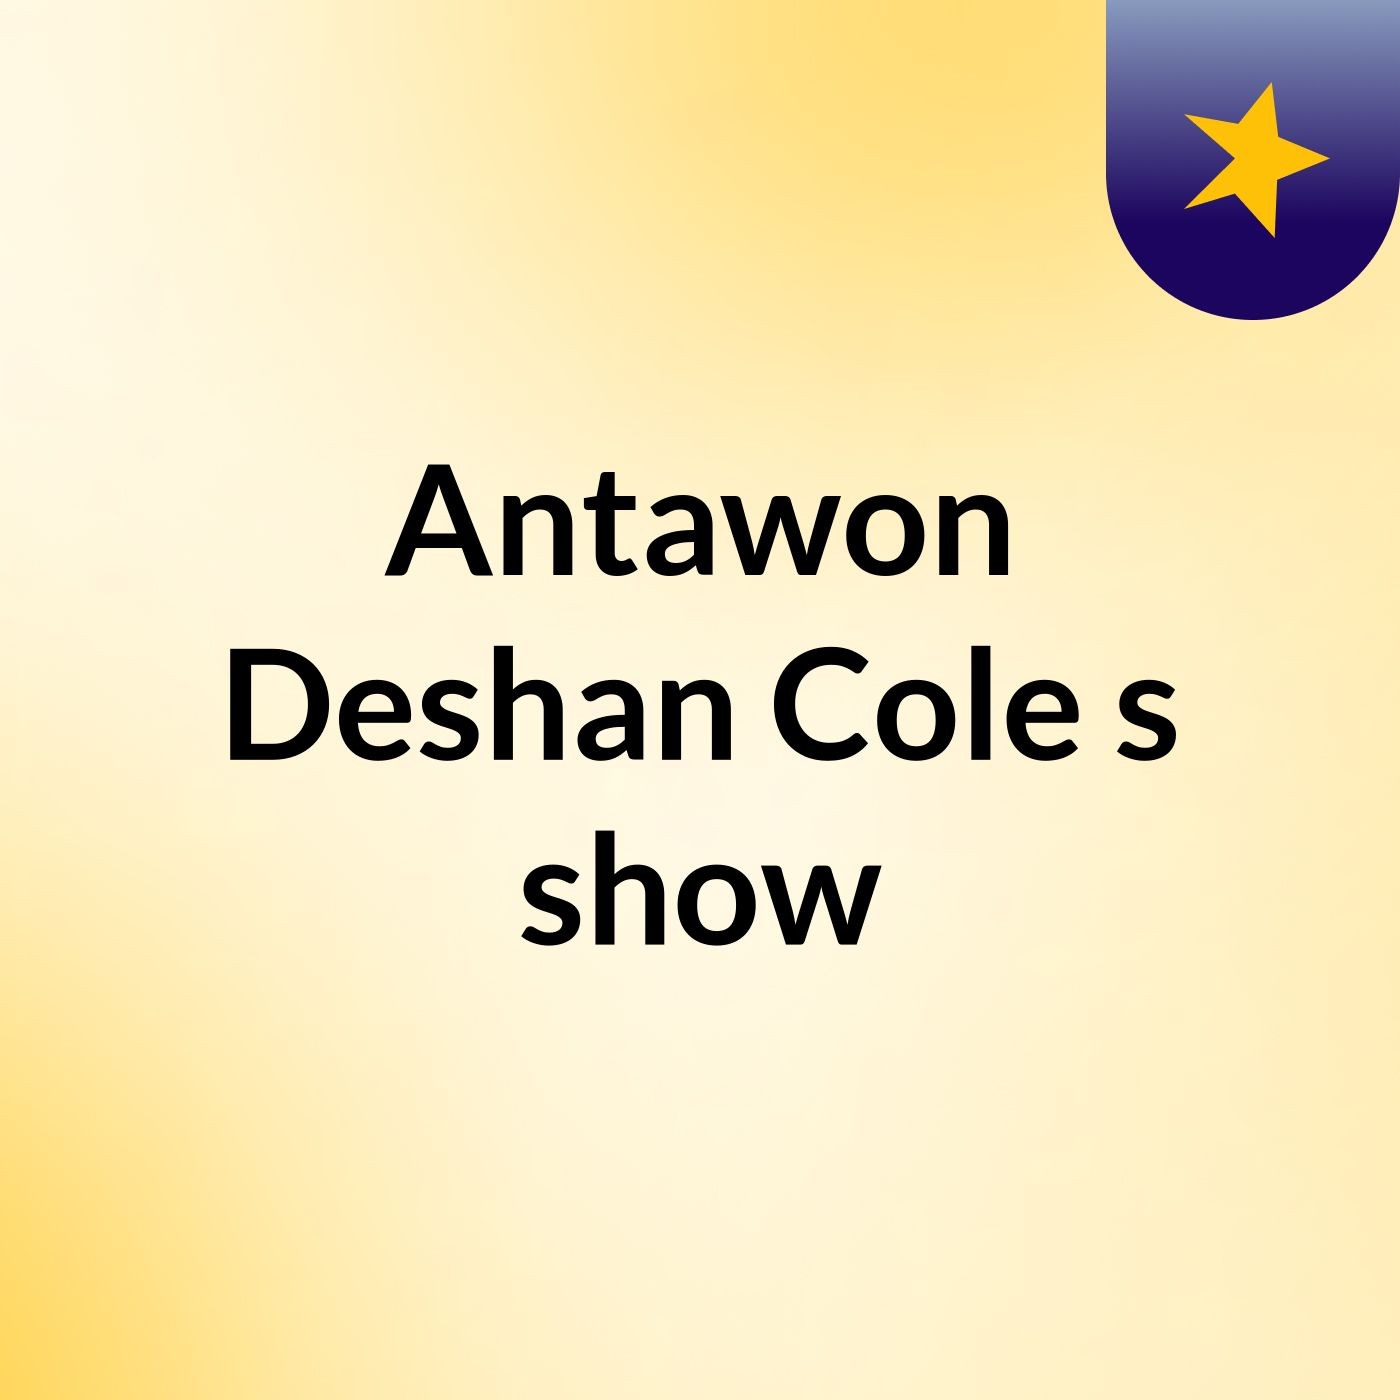 Antawon Deshan Cole's show